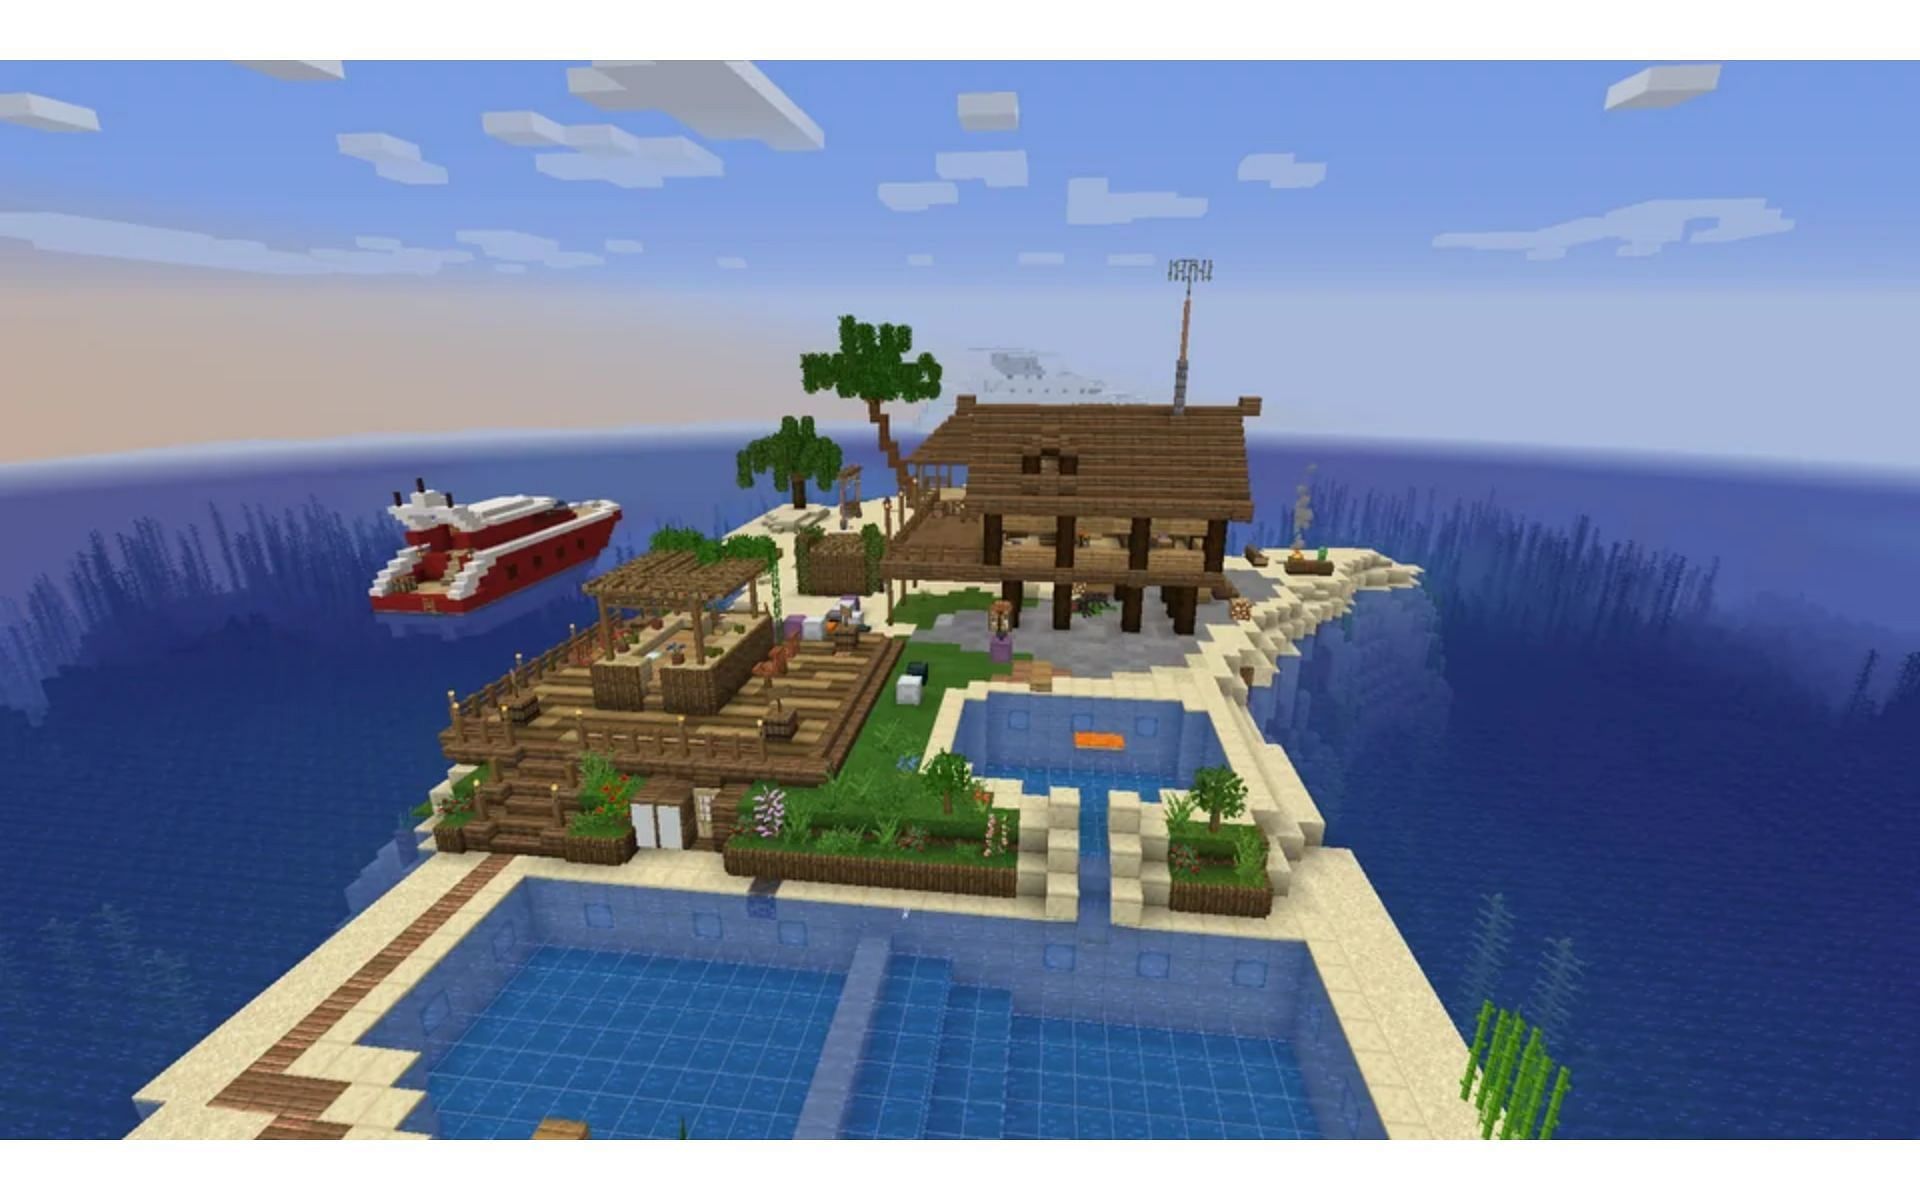 True island beach living. (Image via Reddit.com/u/Urubar34)